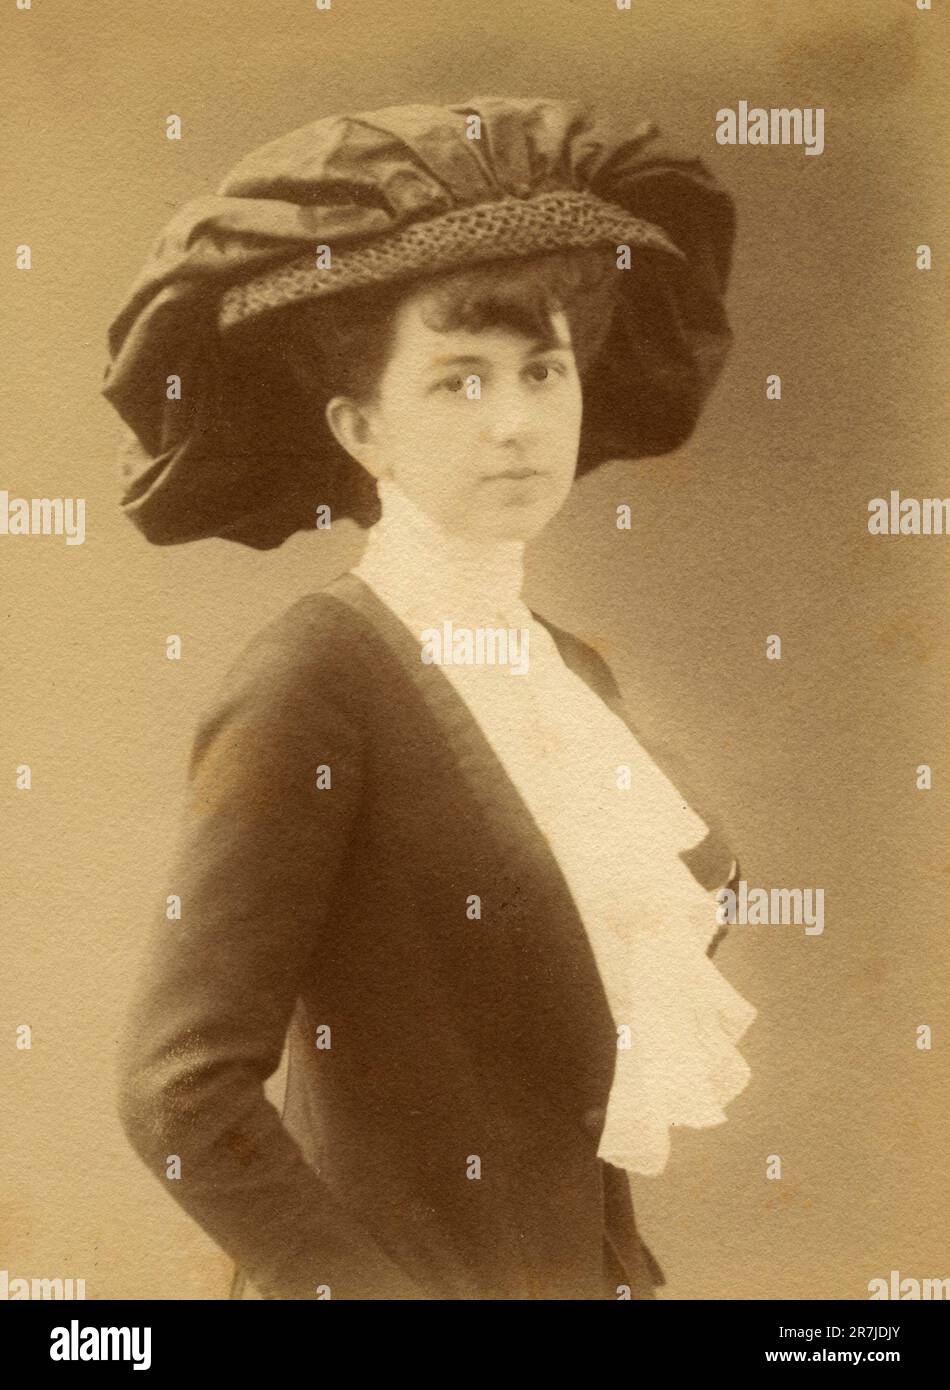 Femme chapeau 1900s Banque de photographies et d'images à haute résolution  - Alamy